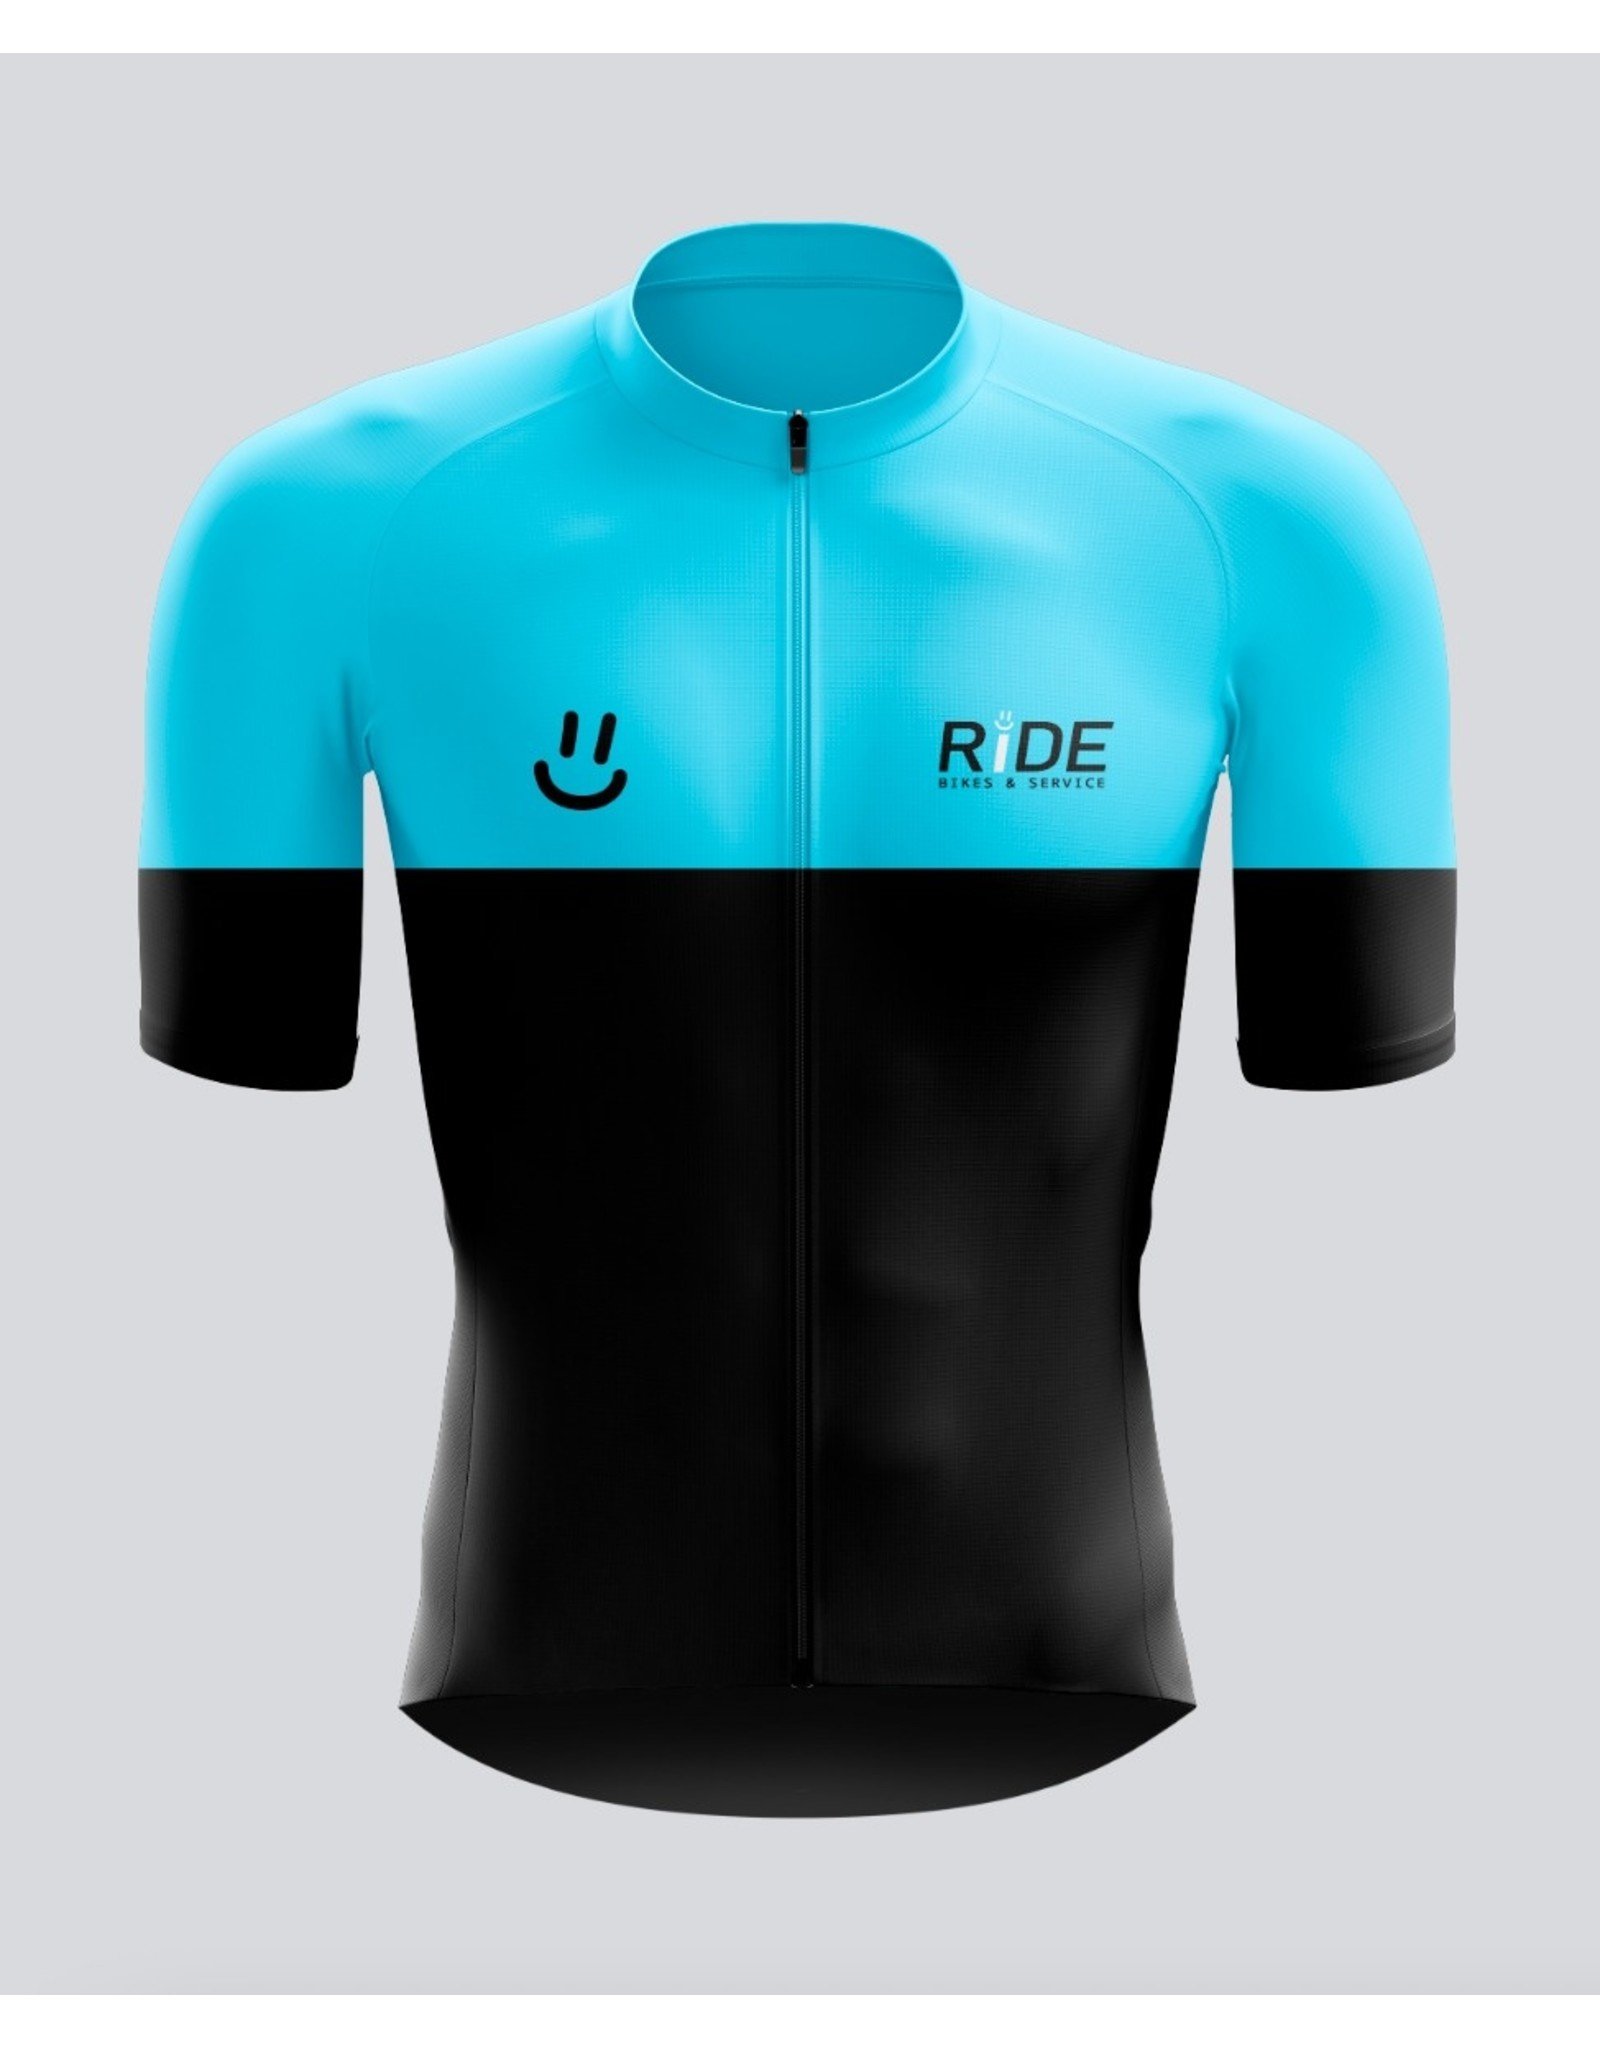 Givelo RIDE BS Bike Jerseys Blue/Pink Men's L